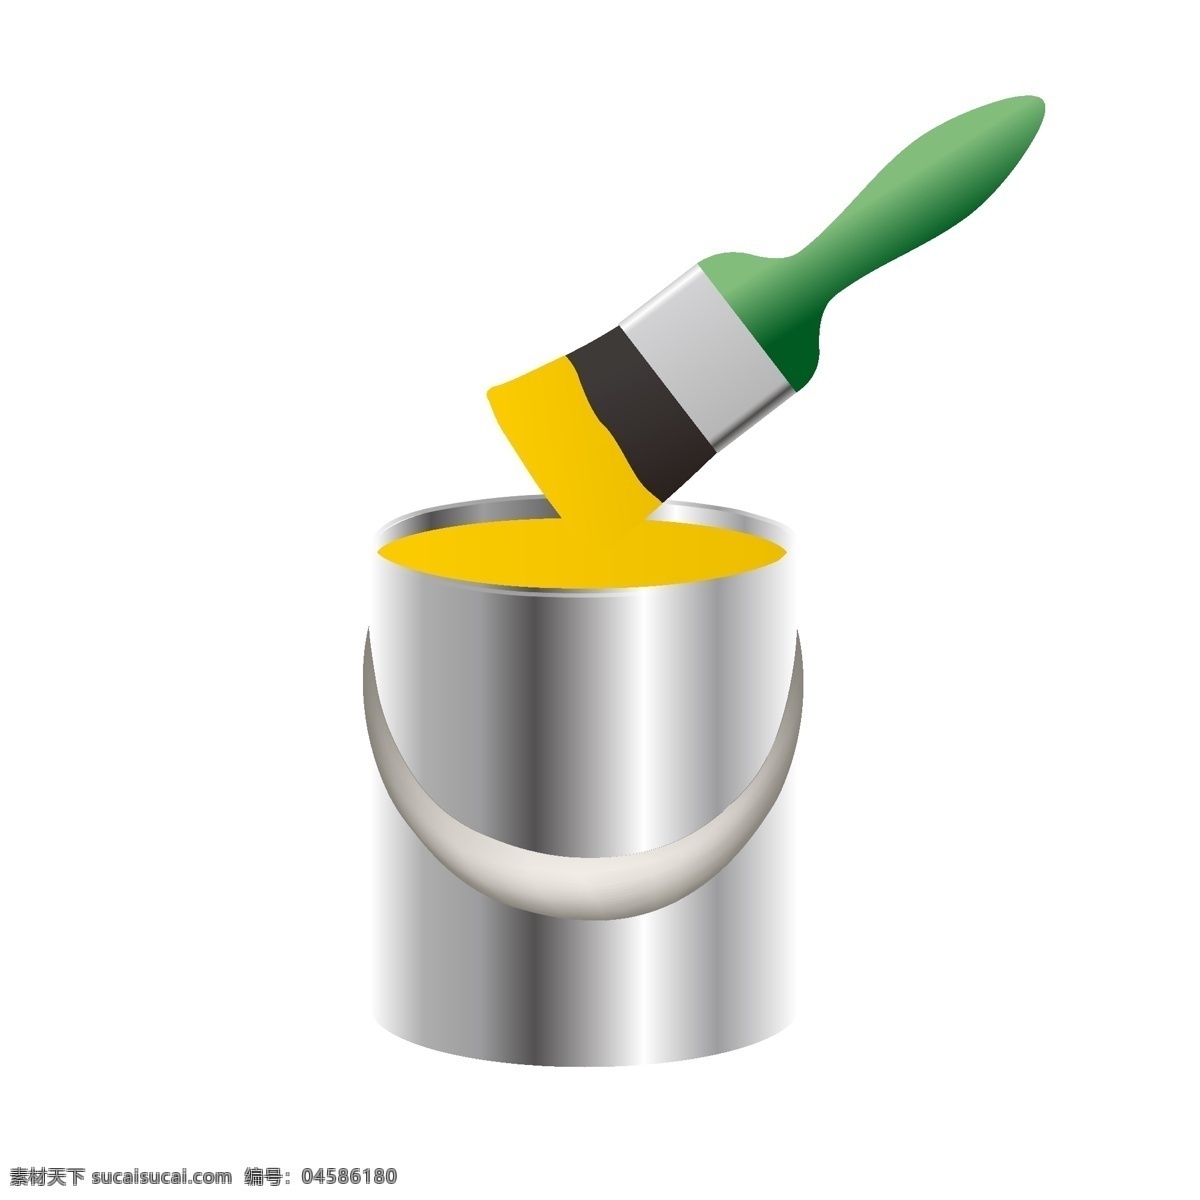 银色 油漆桶 刷子 银色的油漆桶 黄色的油漆 绿色的刷子 装修工具 油漆桶装饰 油漆桶插画